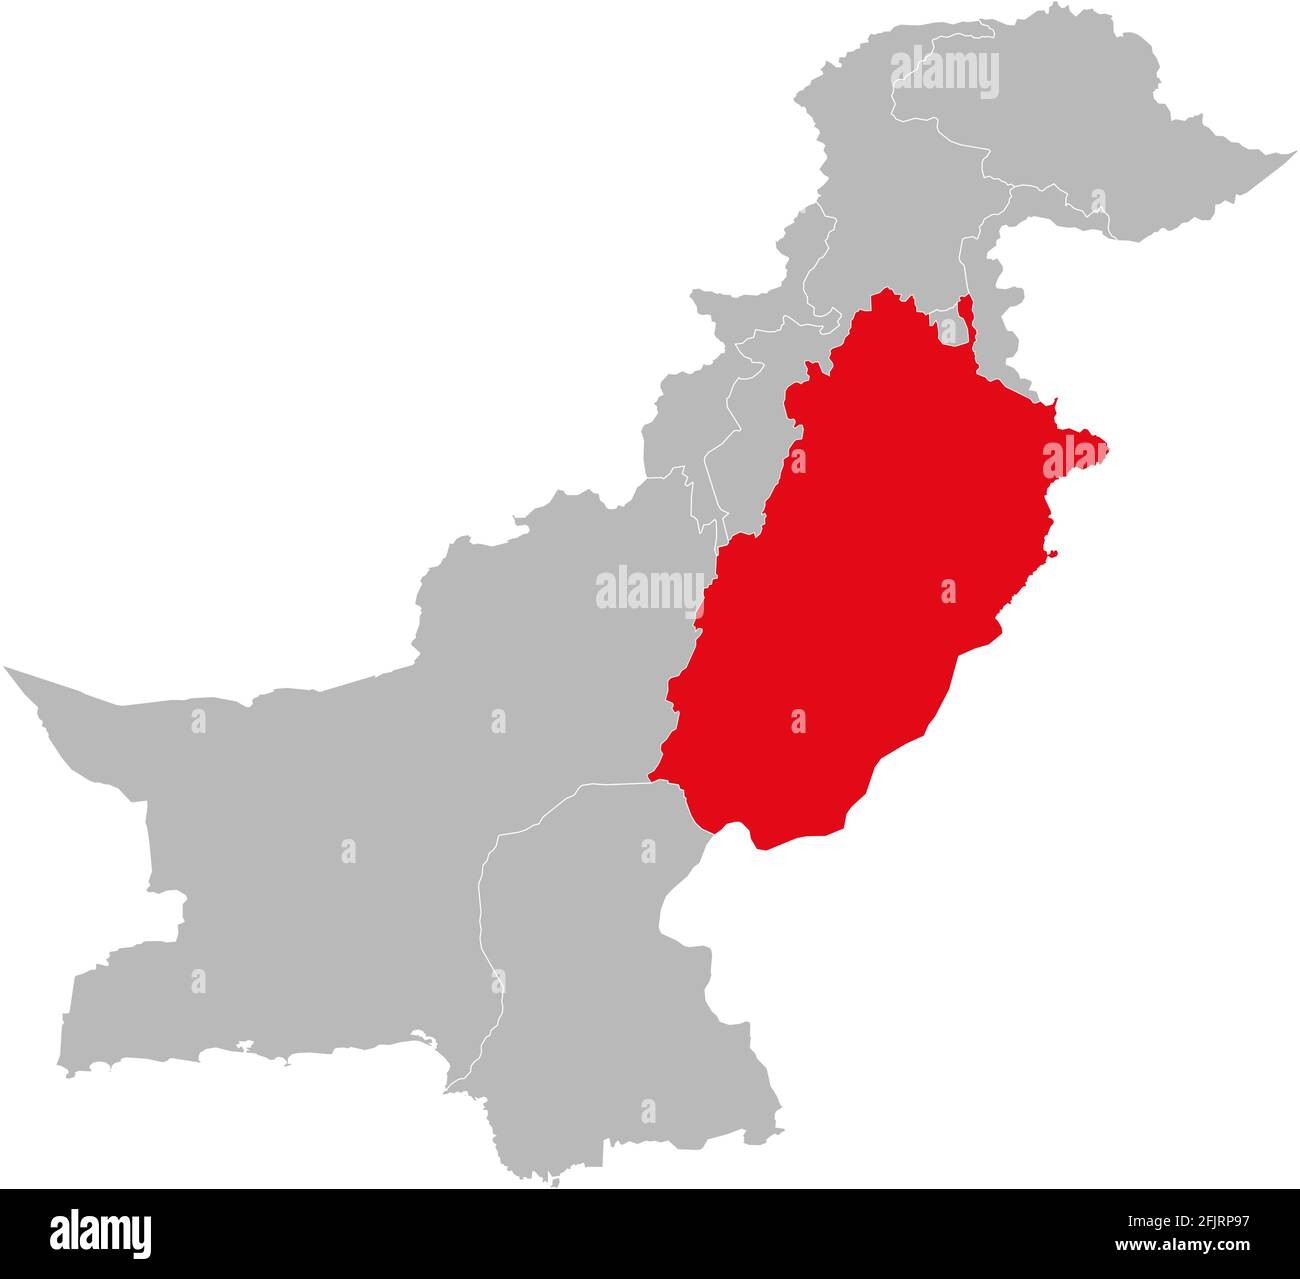 Provincia di Punjab isolata sulla mappa pakistana. Sfondo grigio chiaro. Concetti e background aziendali. Illustrazione Vettoriale